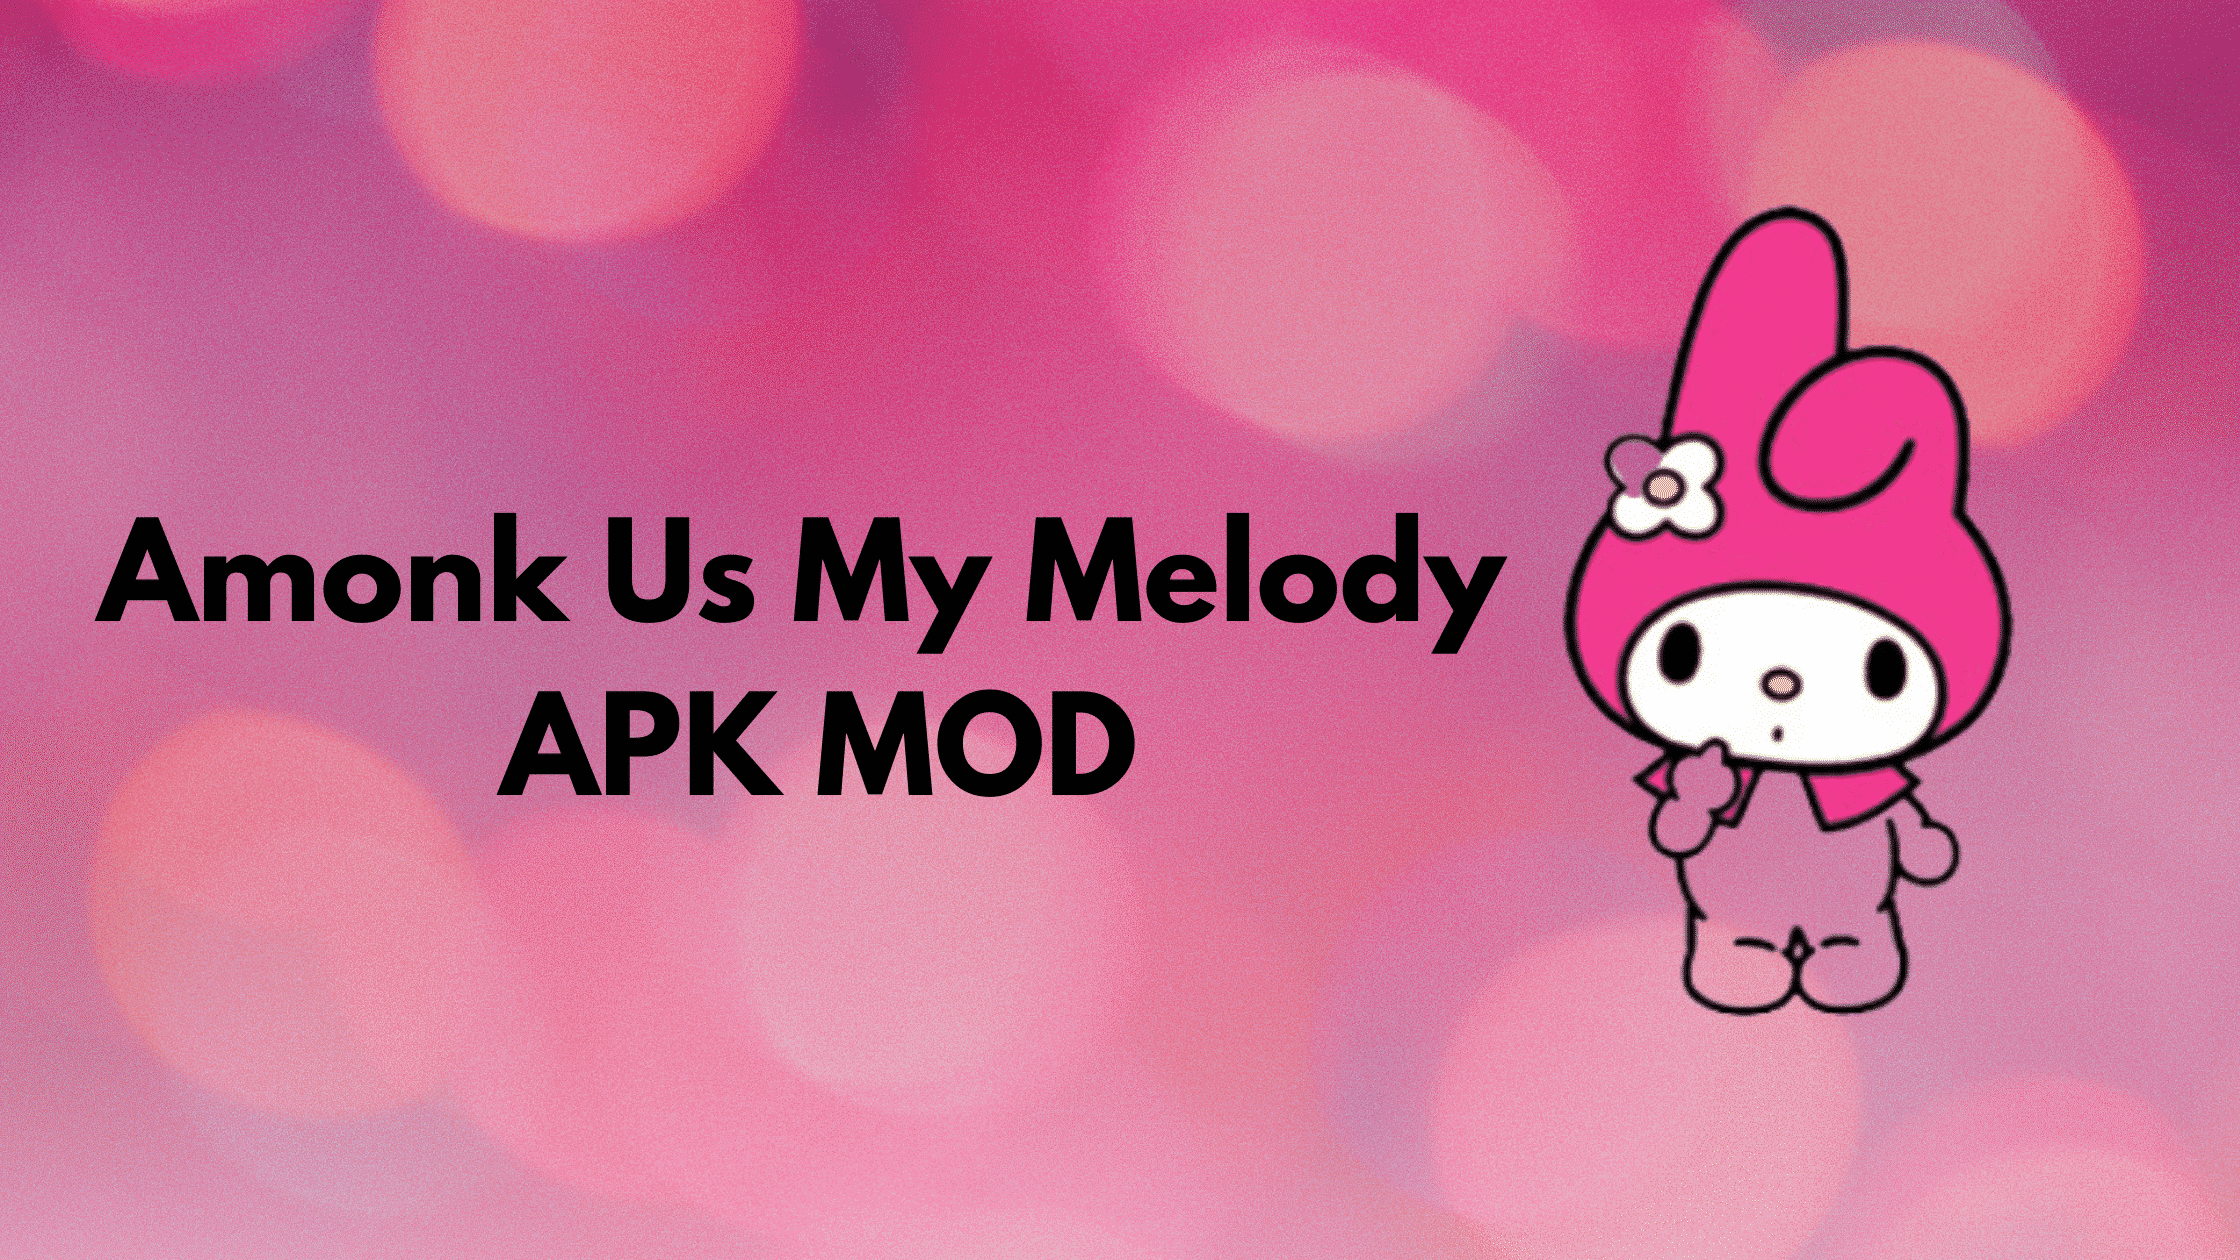 Among Us melody mod apk